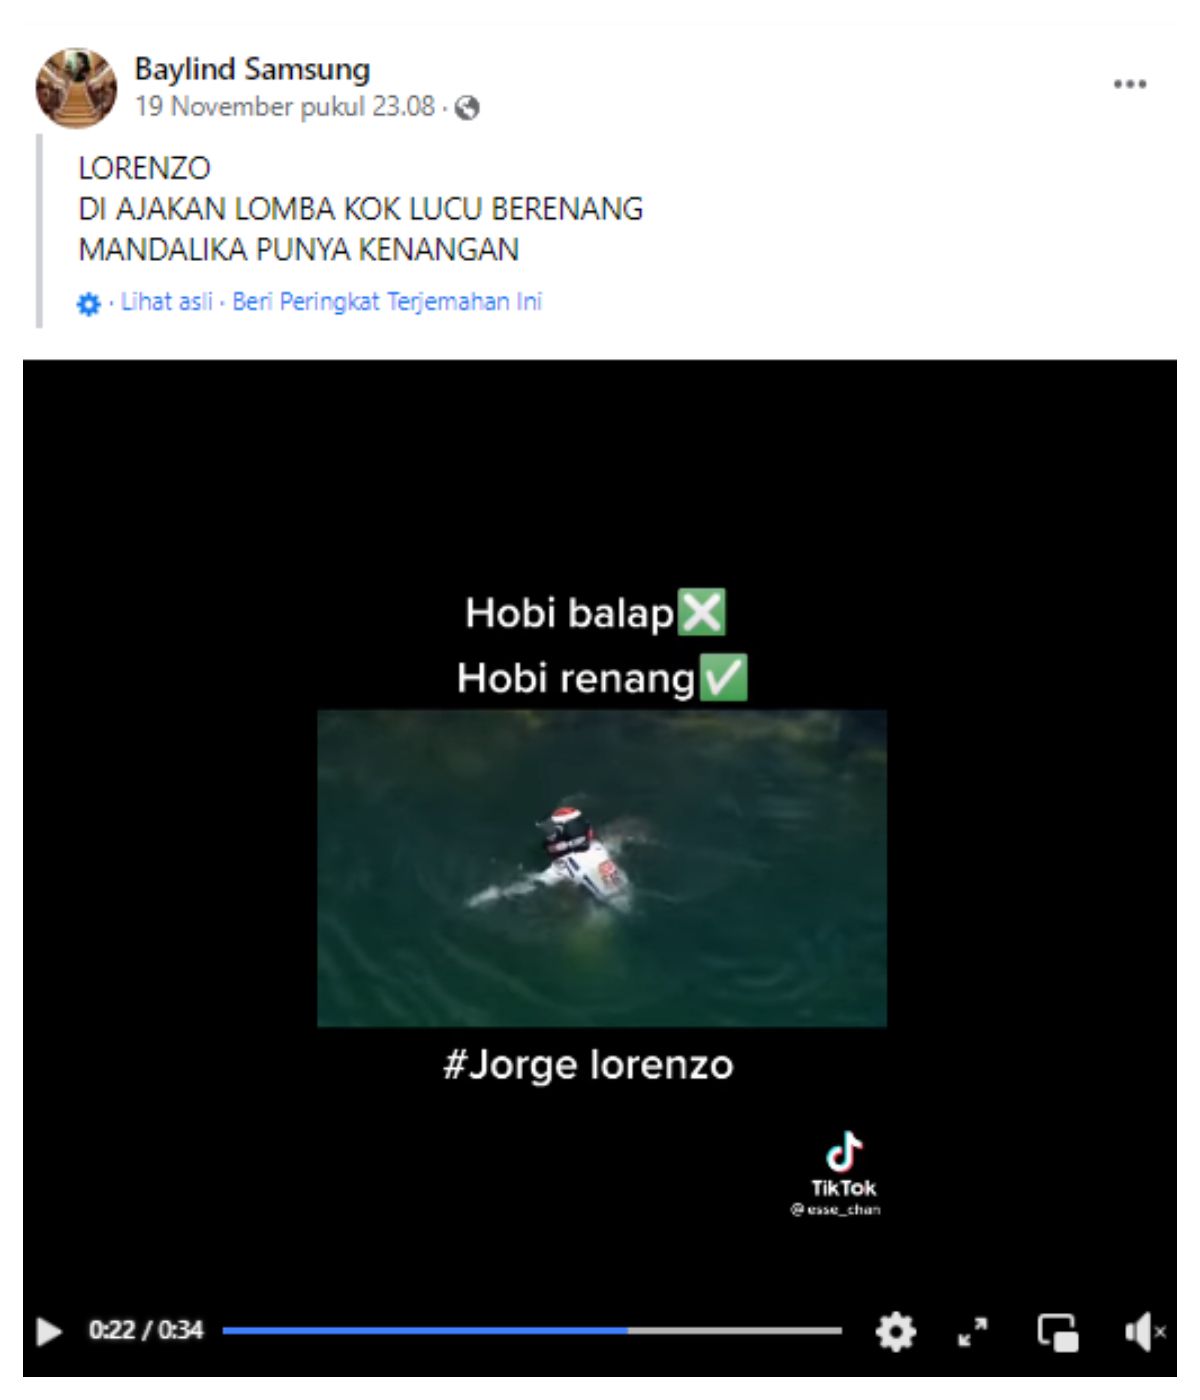 Beredar kabar yang menyebut pembalap MotoGP Jorge Lorenzo berenang di danau dekat Sirkuit Mandalika, simak cek faktanya berikut ini.